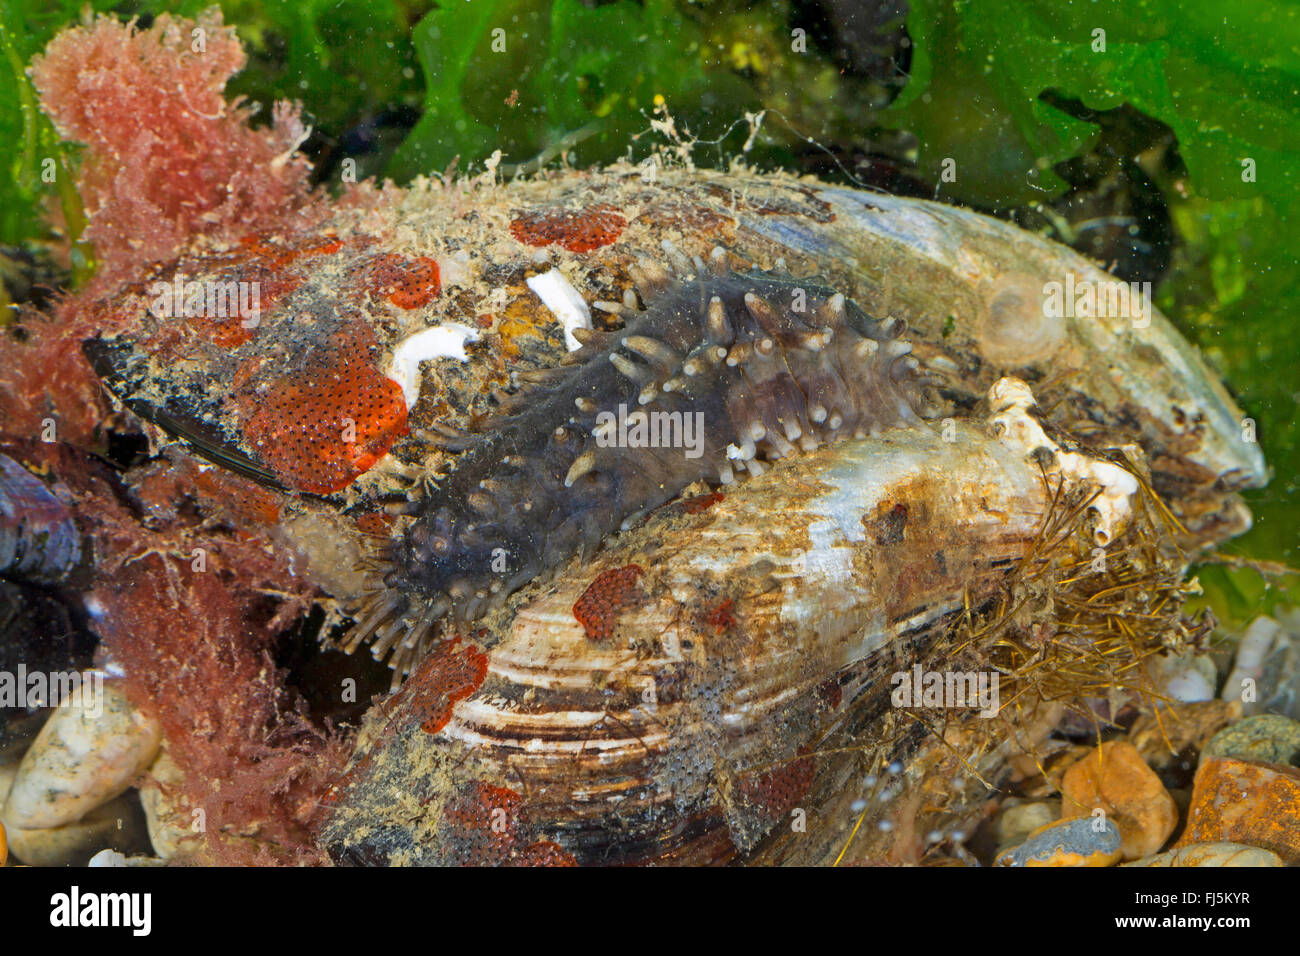 climbing sea cucumber (Ocnus planci, Cucumaria planci, Ocnus brunneus), on a mussel Stock Photo